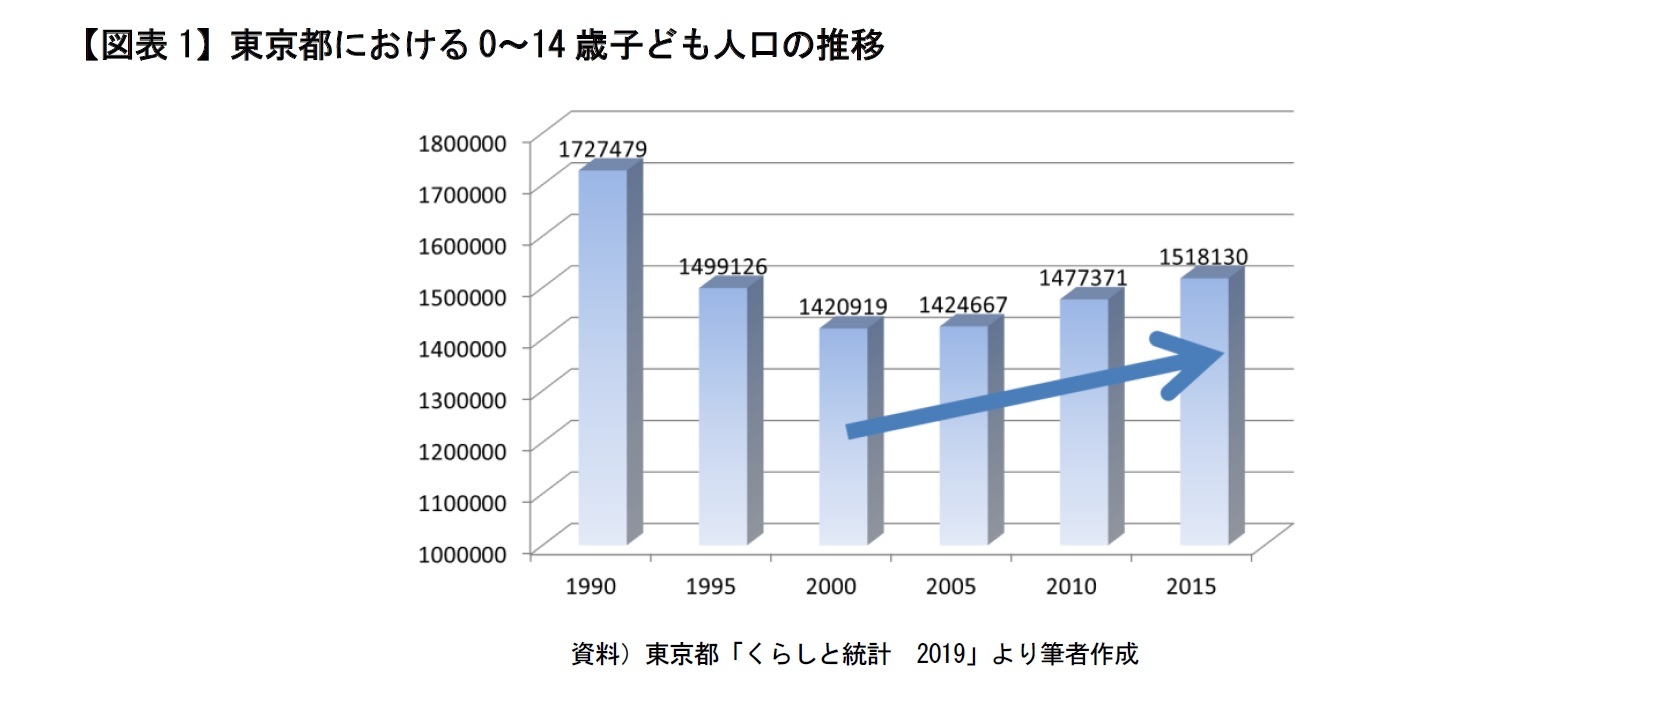 【図表1】東京都における0～14歳子ども人口の推移